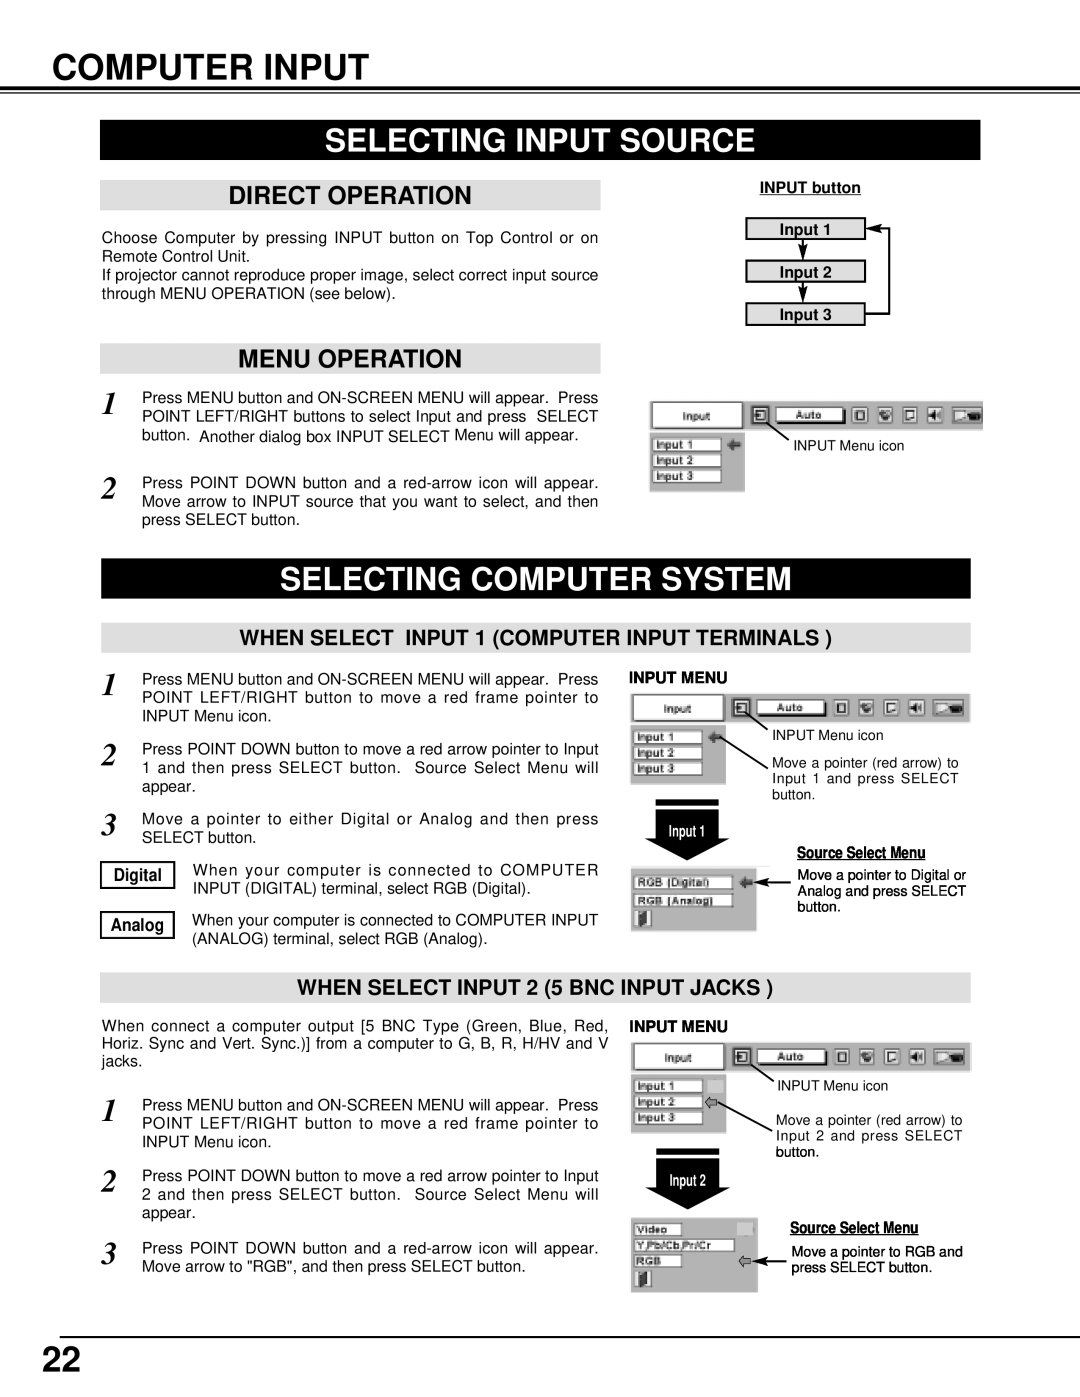 BOXLIGHT MP-42T manual Computer Input, Selecting Input Source, Selecting Computer System, Direct Operation, Menu Operation 